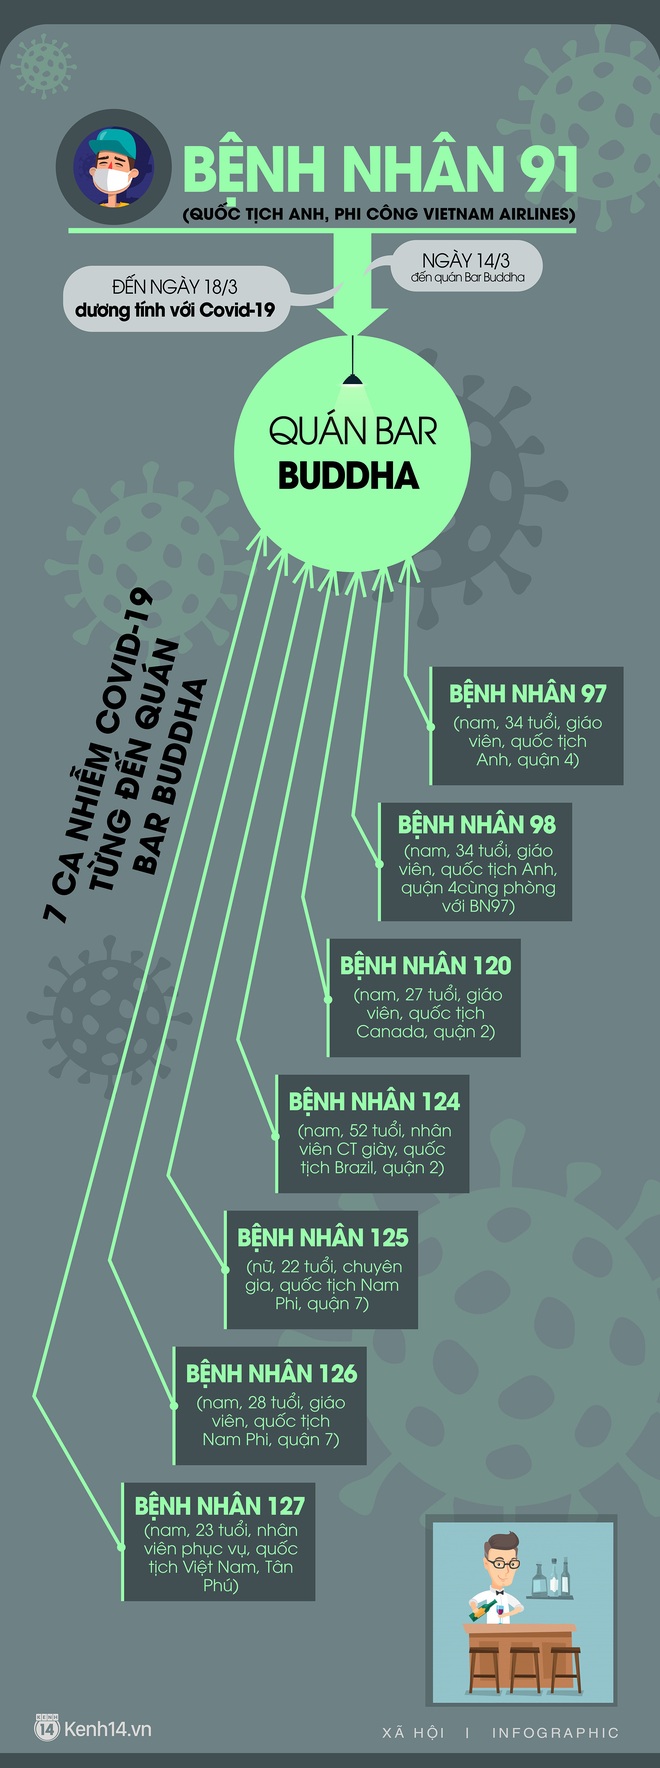 Infographic: Sau nam phi công Vietnam Airlines, đã có thêm 7 ca nhiễm Covid-19 liên quan đến quán bar Buddha - Ảnh 1.